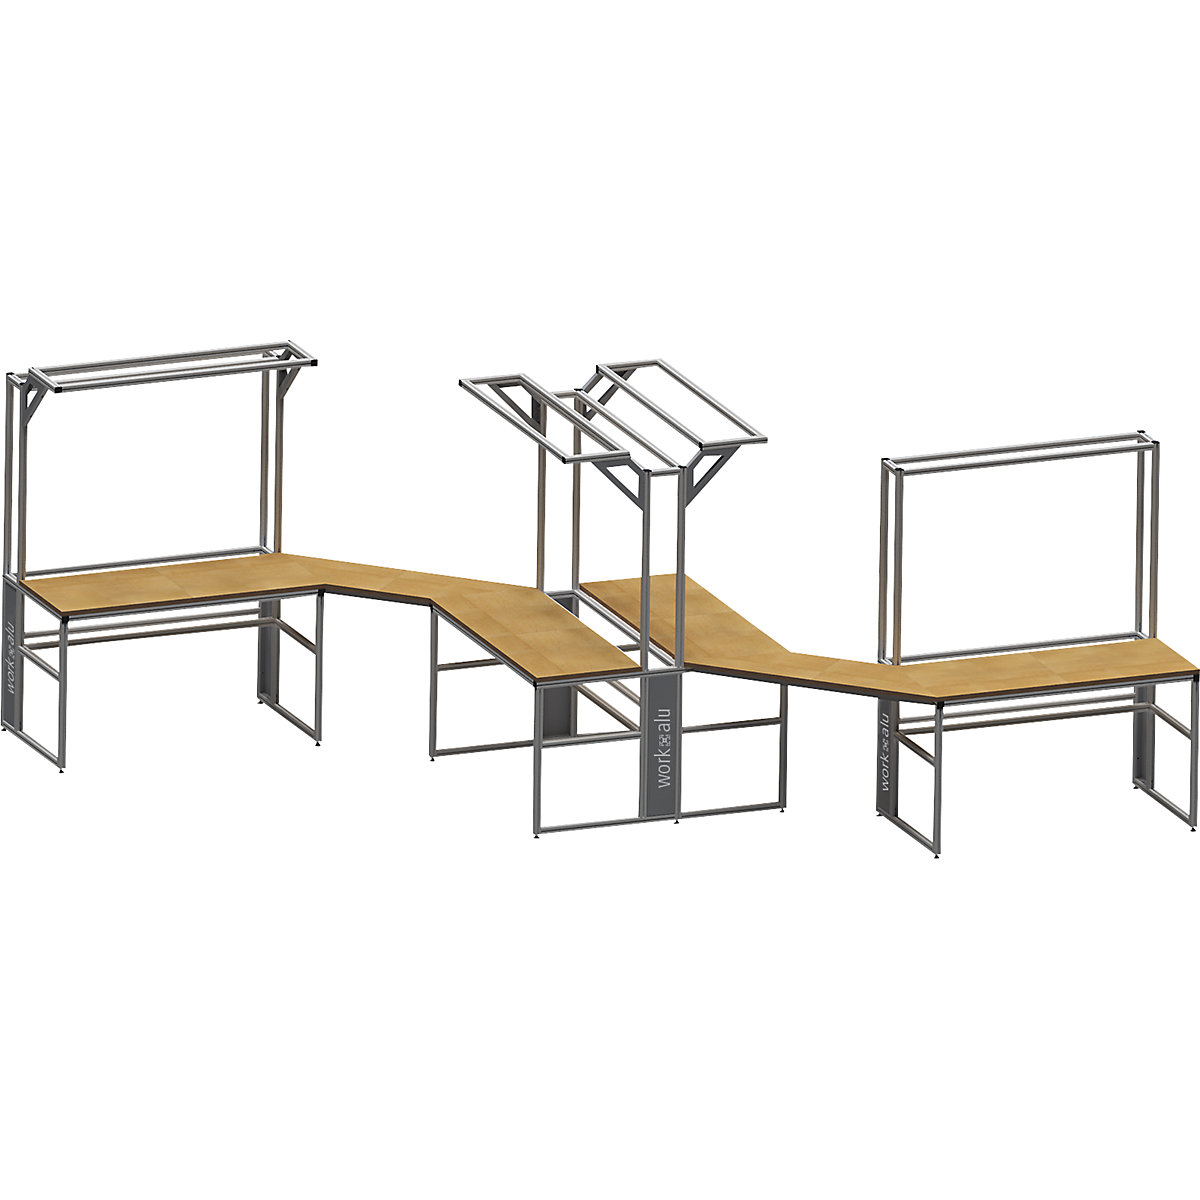 Stół warsztatowy aluminiowy workalu® z modułem systemowym, jednostronny – bedrunka hirth (Zdjęcie produktu 4)-3